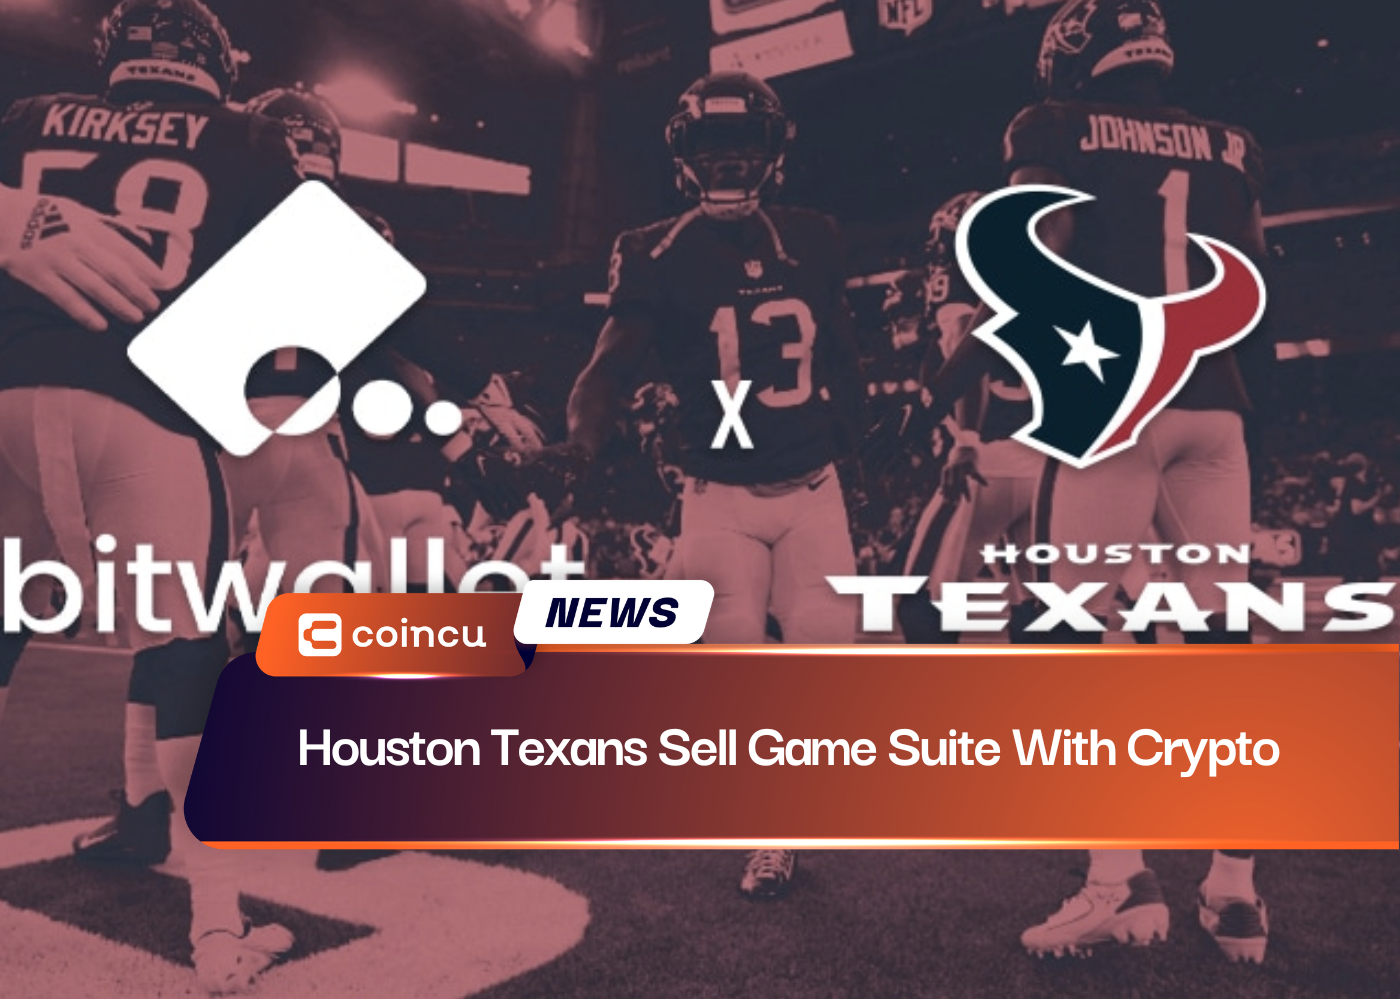 Los Houston Texans venden una suite de juegos con criptomonedas